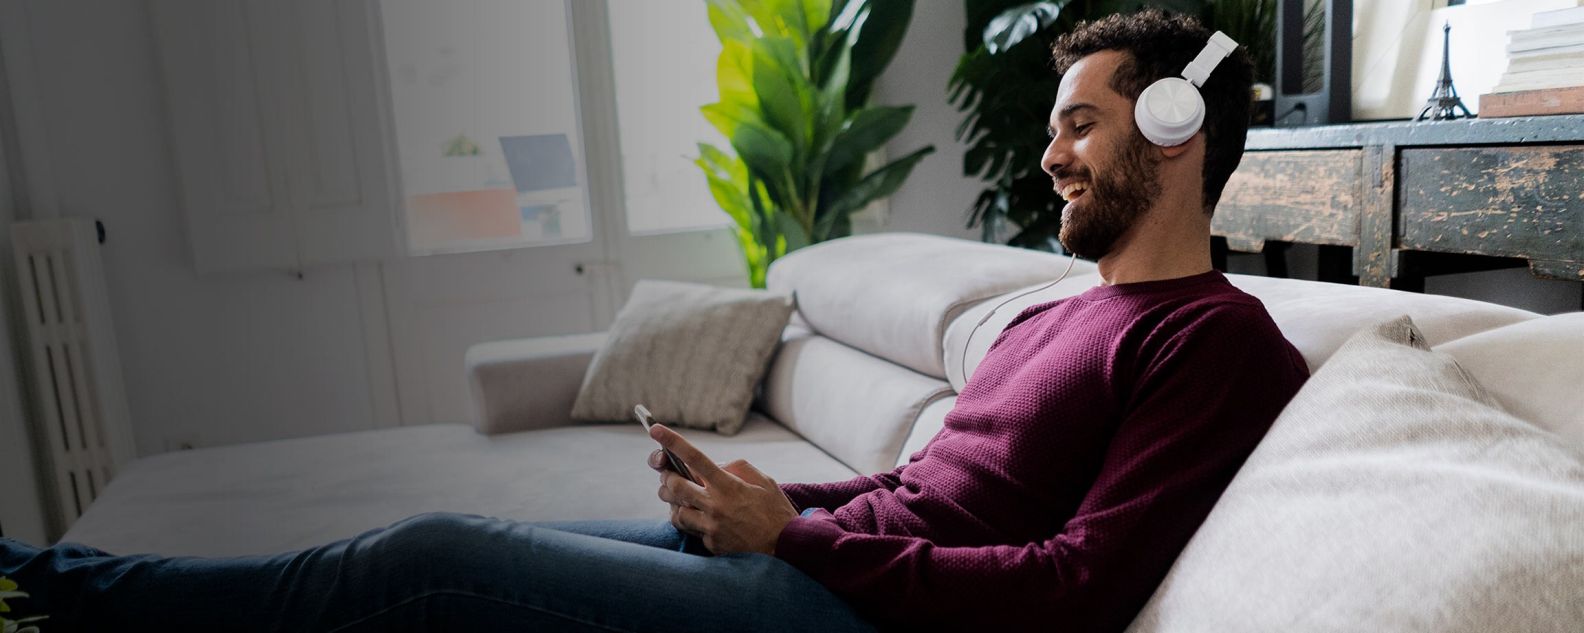 Un hombre riendo sentado en el sofá con un teléfono móvil y auriculares